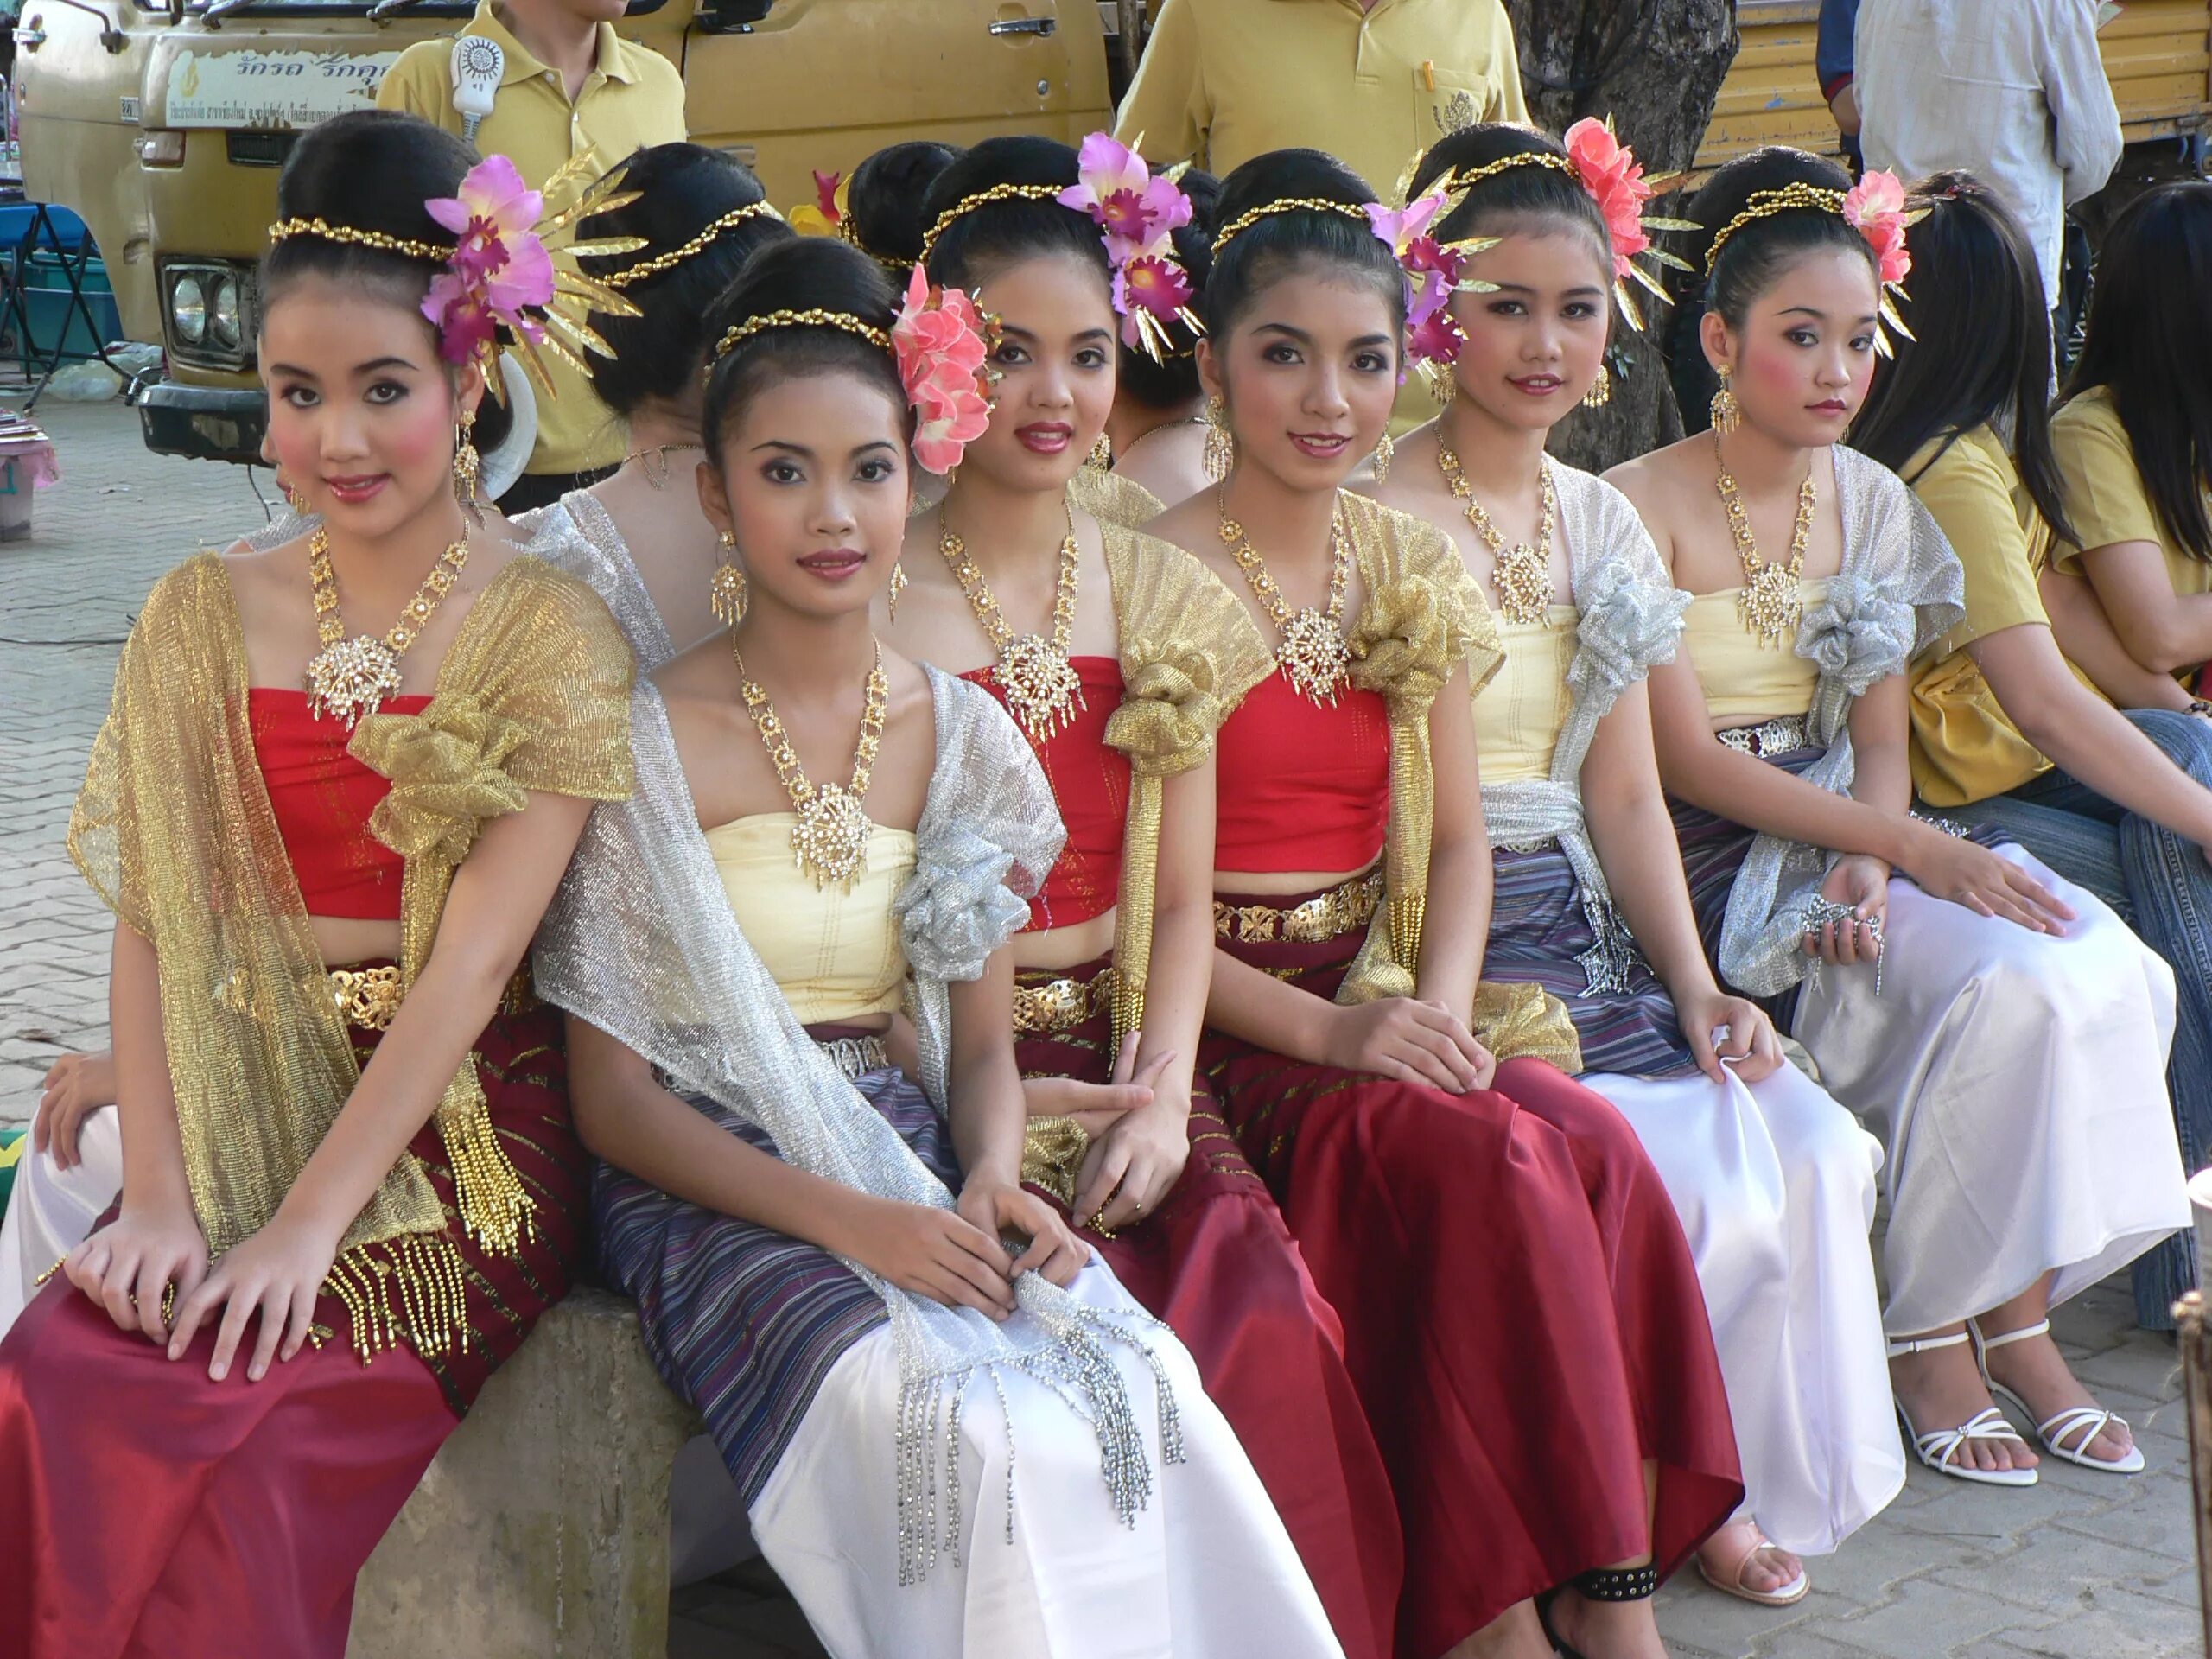 Тайцы девушки. Тайланд традиционный костюм. Национальная одежда Тайланда. Тайская девушка в национальном костюме. Женщины Тайланда.